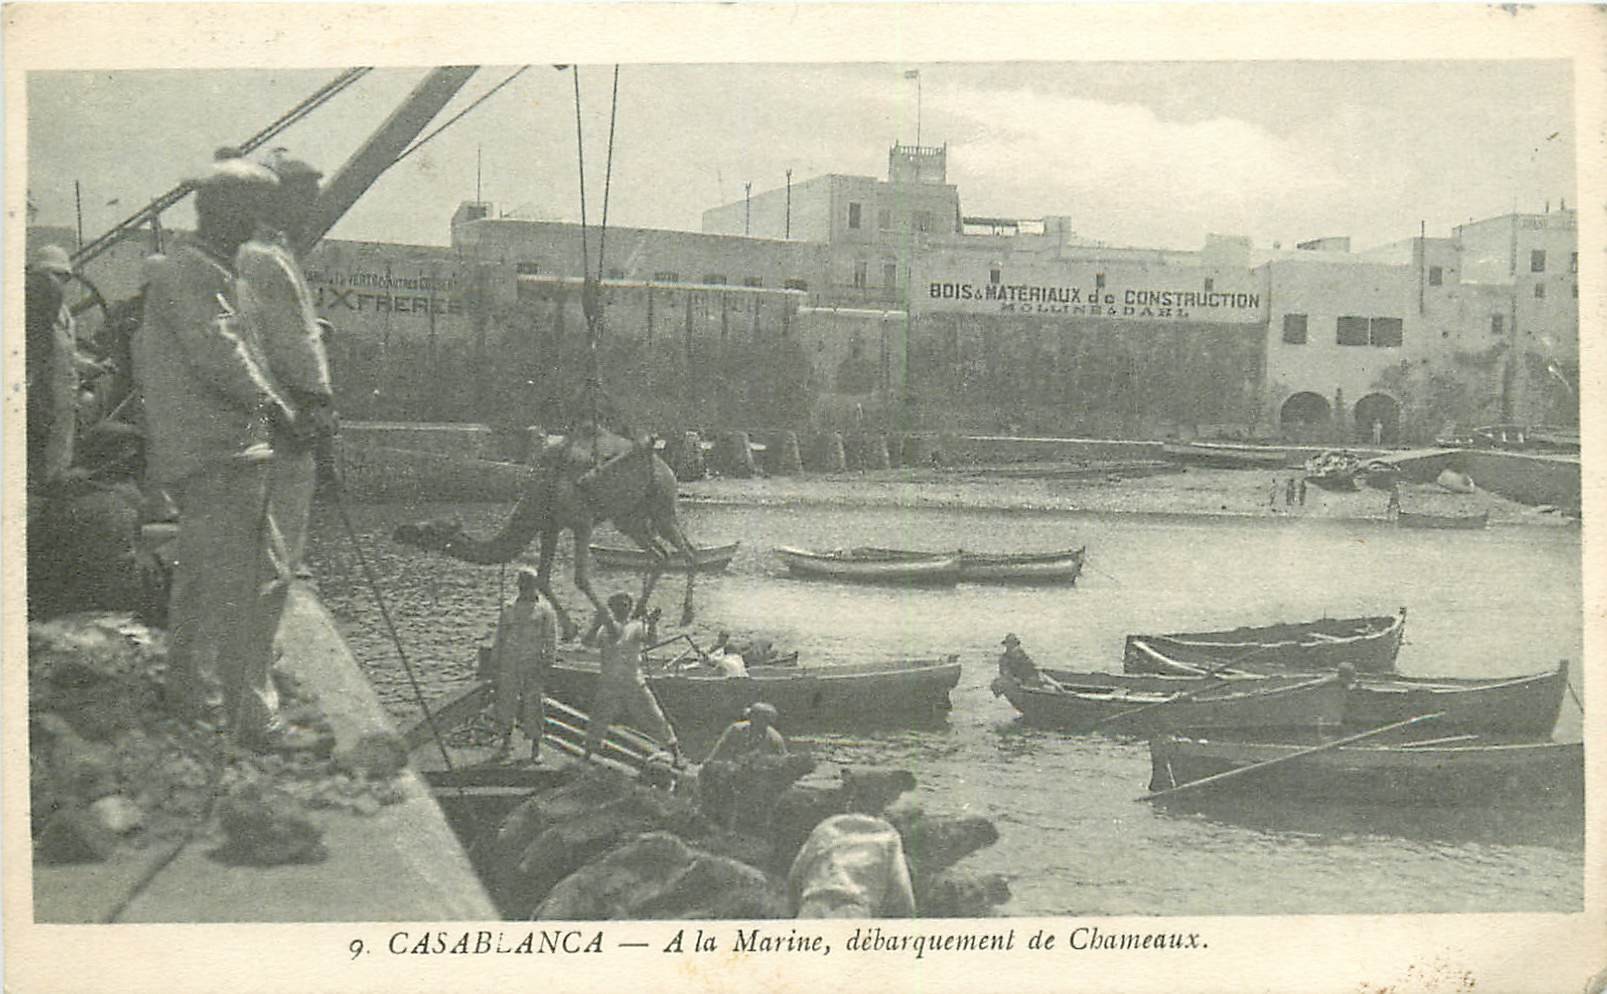 WW CASABLANCA. Débarquement de Chameaux à la Marine 1914